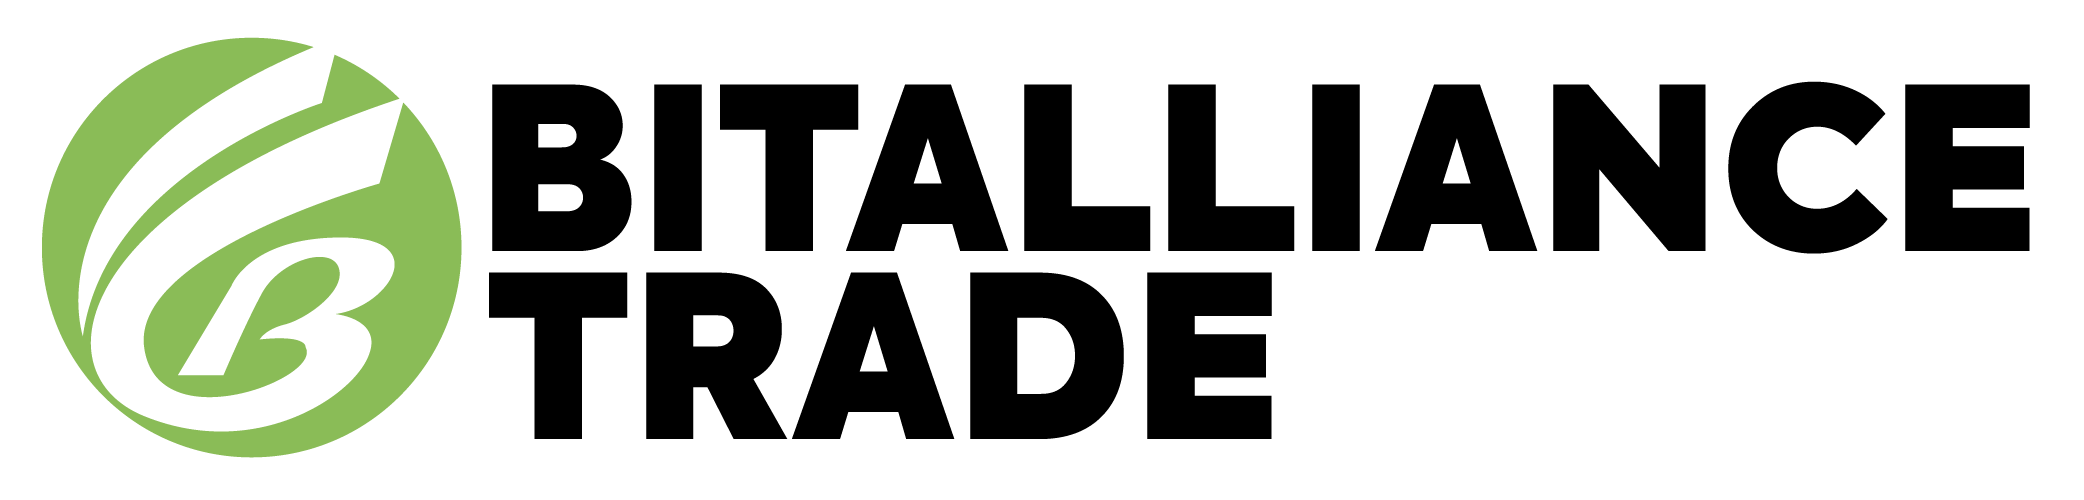 Bitalliancetrade Logo